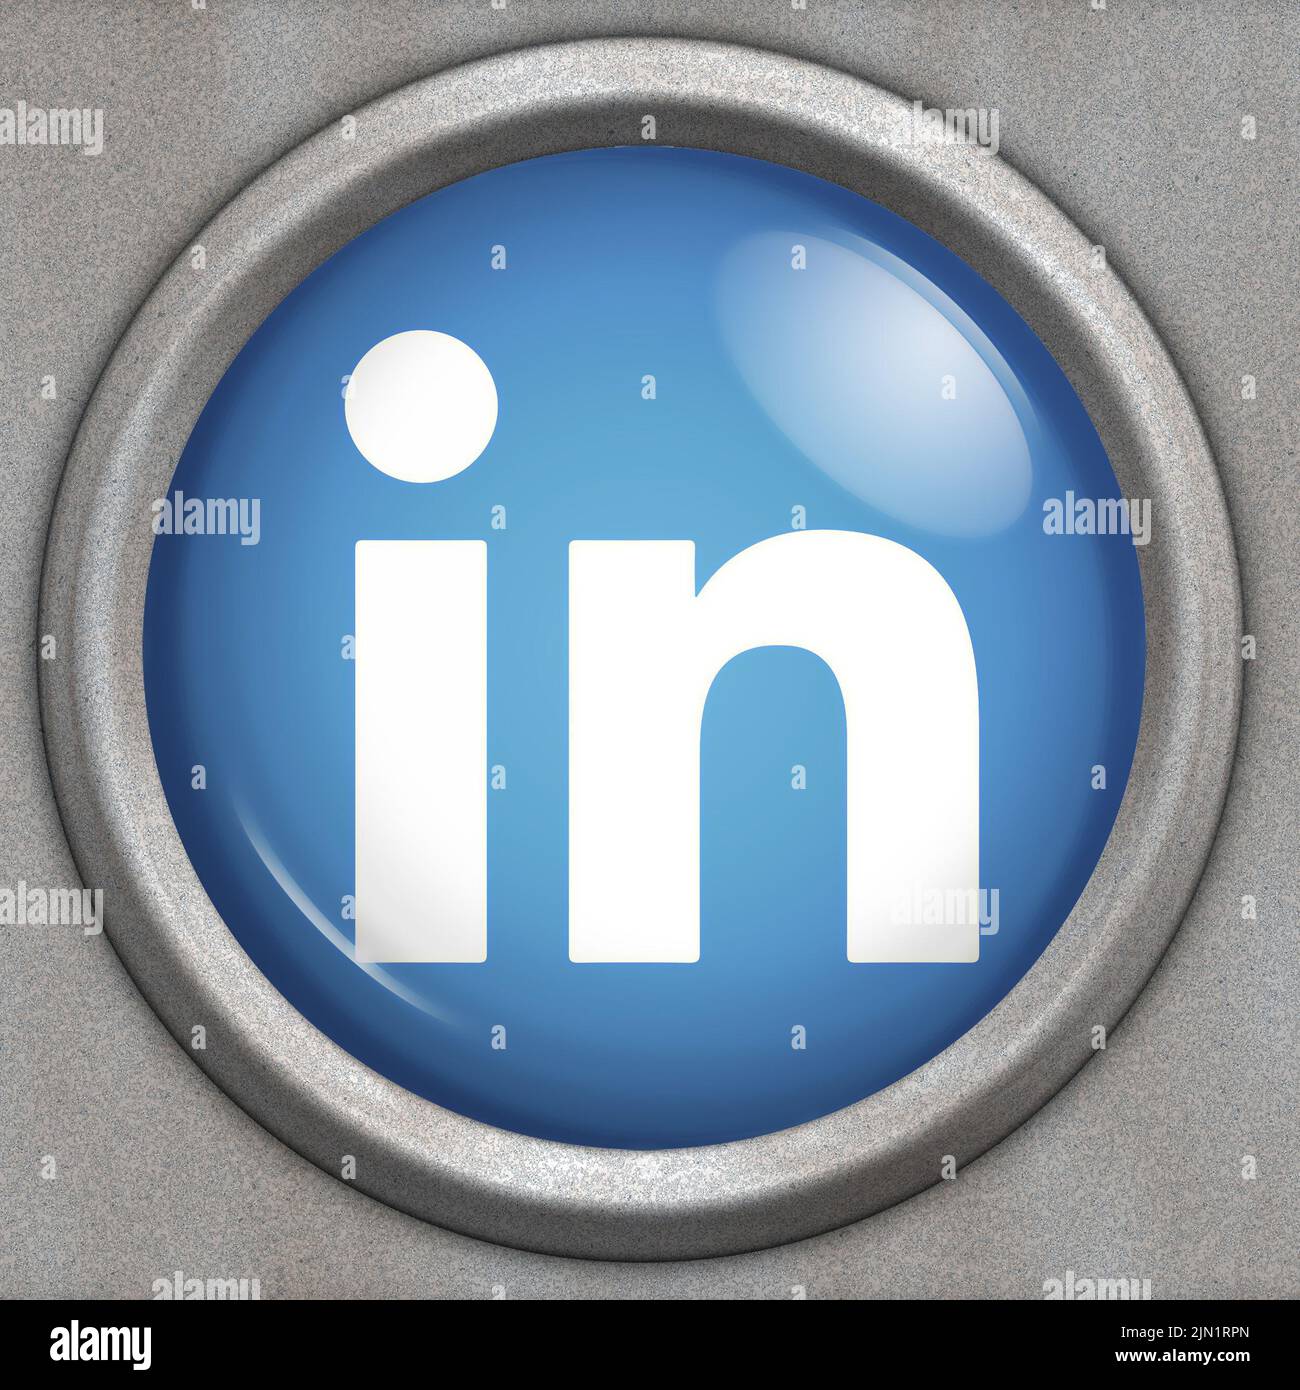 Botón con logotipo del servicio de redes sociales Linkedin Foto de stock